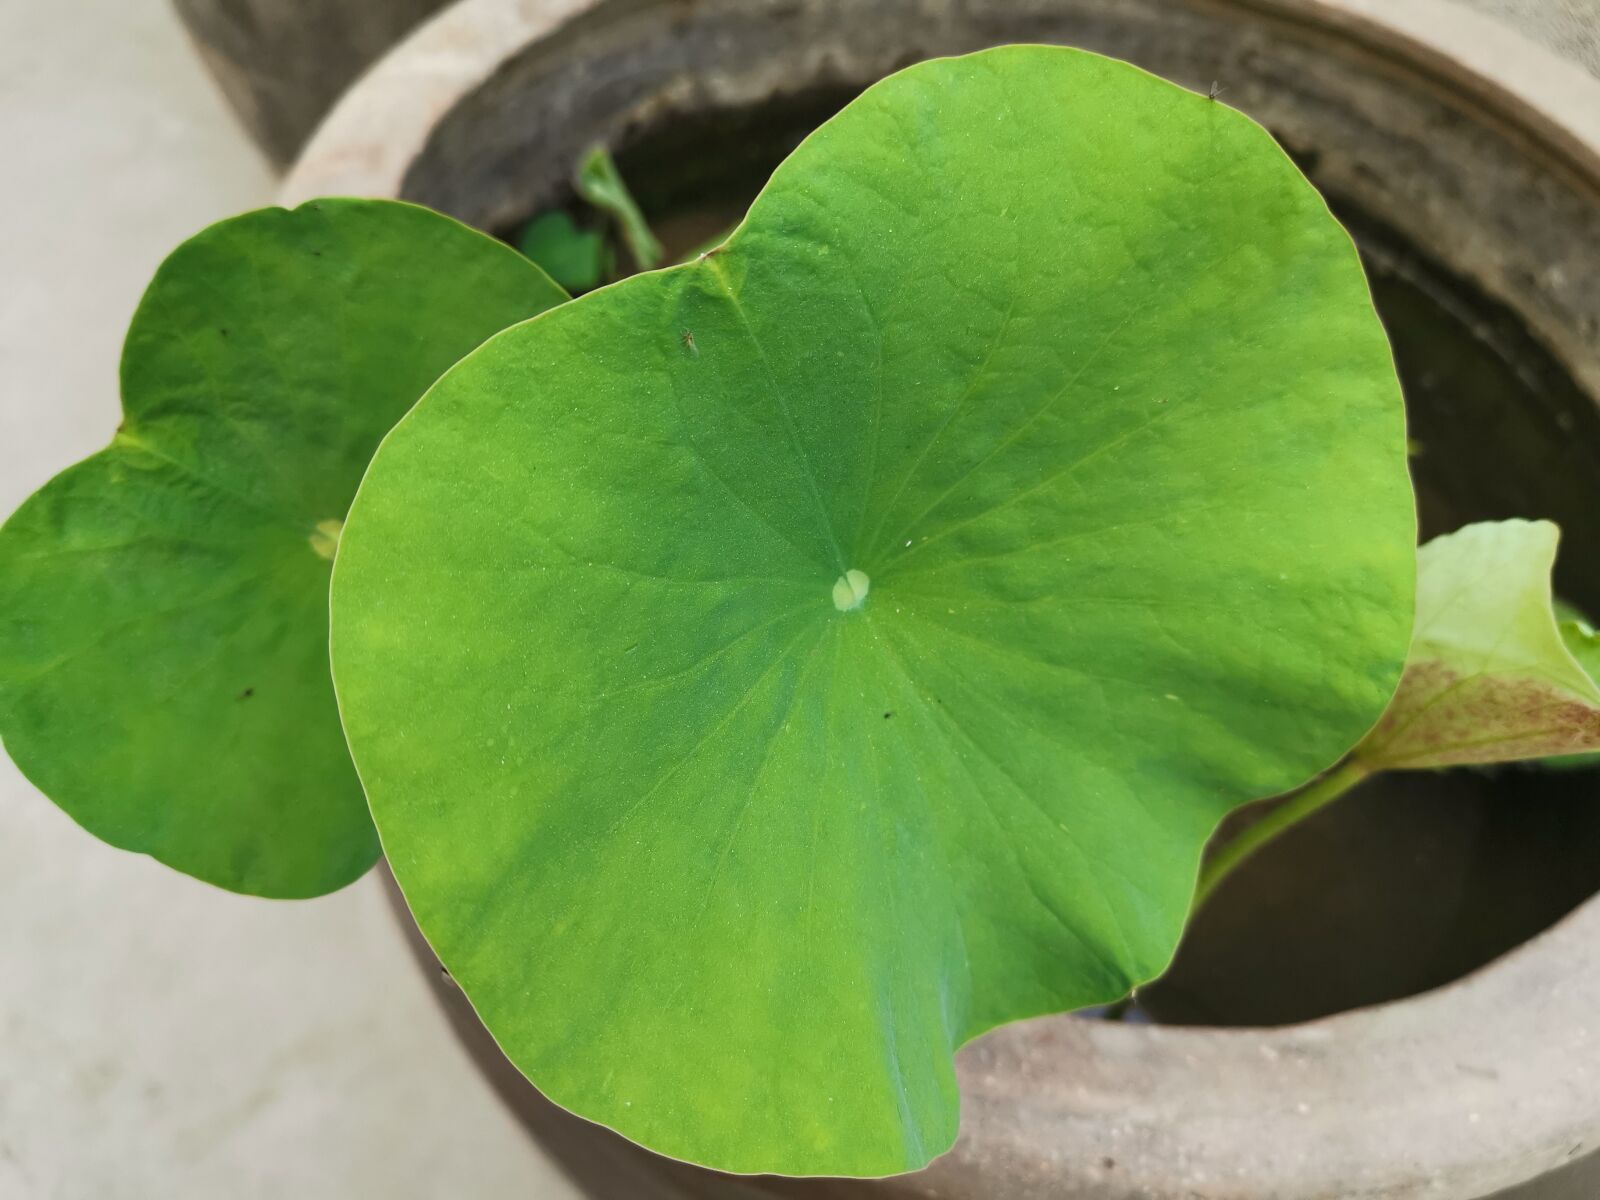 HUAWEI Mate 20 Pro sample photo. Lotus, lotus leaf, vat photography